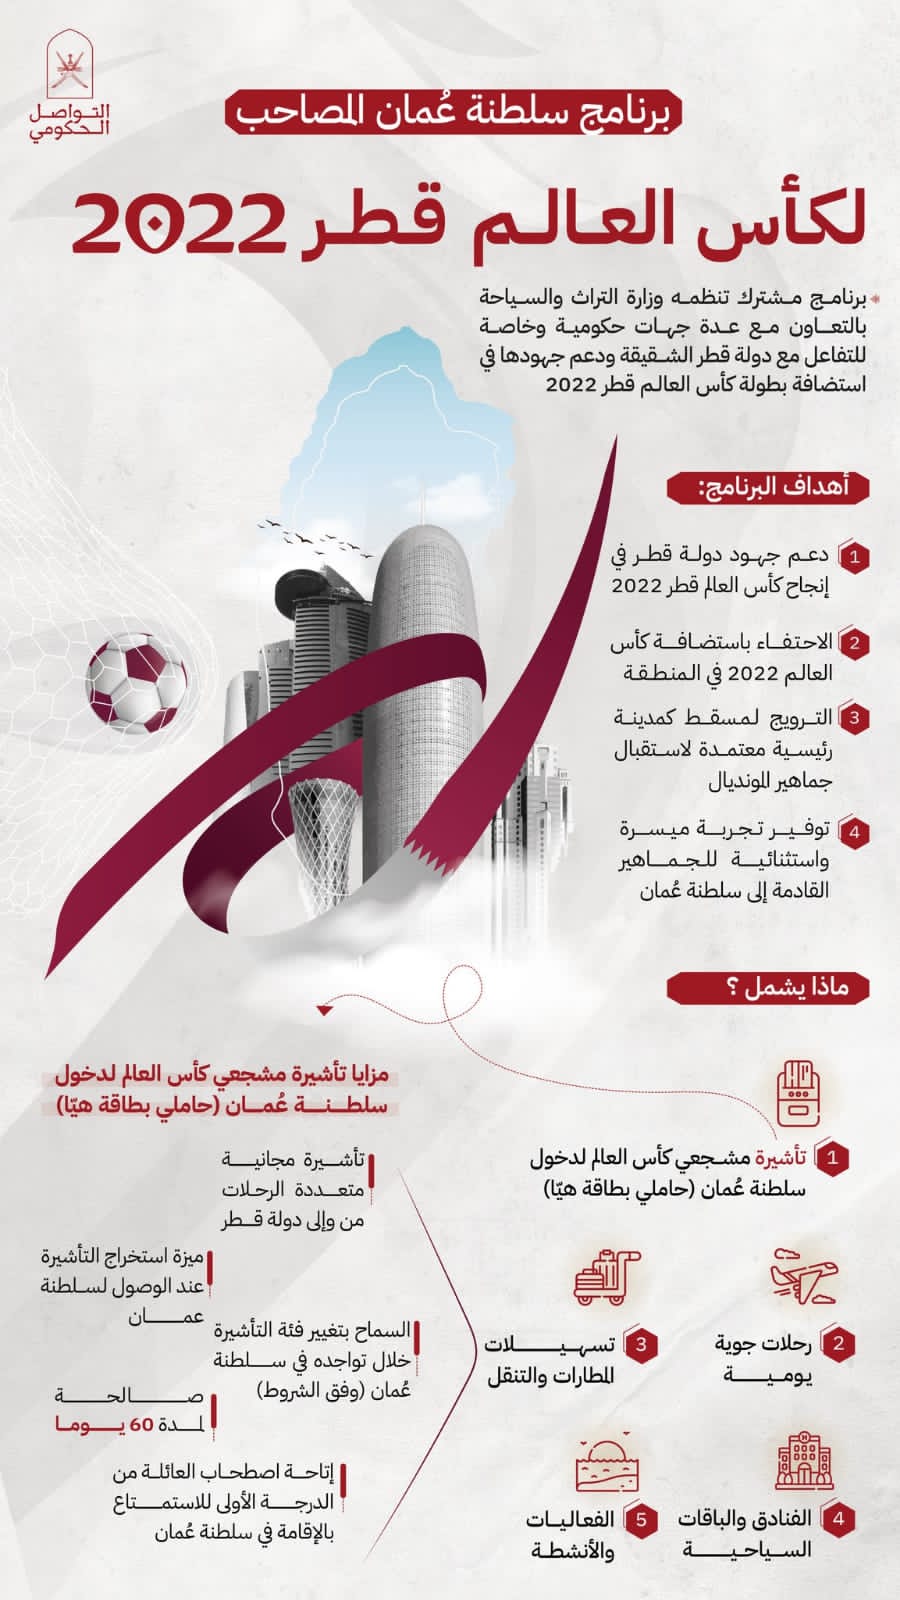 سلطنة عُمان تعلن عن برنامجها المصاحب لكأس العالم قطر ٢٠٢٢ دعمًا لجهود دولة قطر الشقيقة